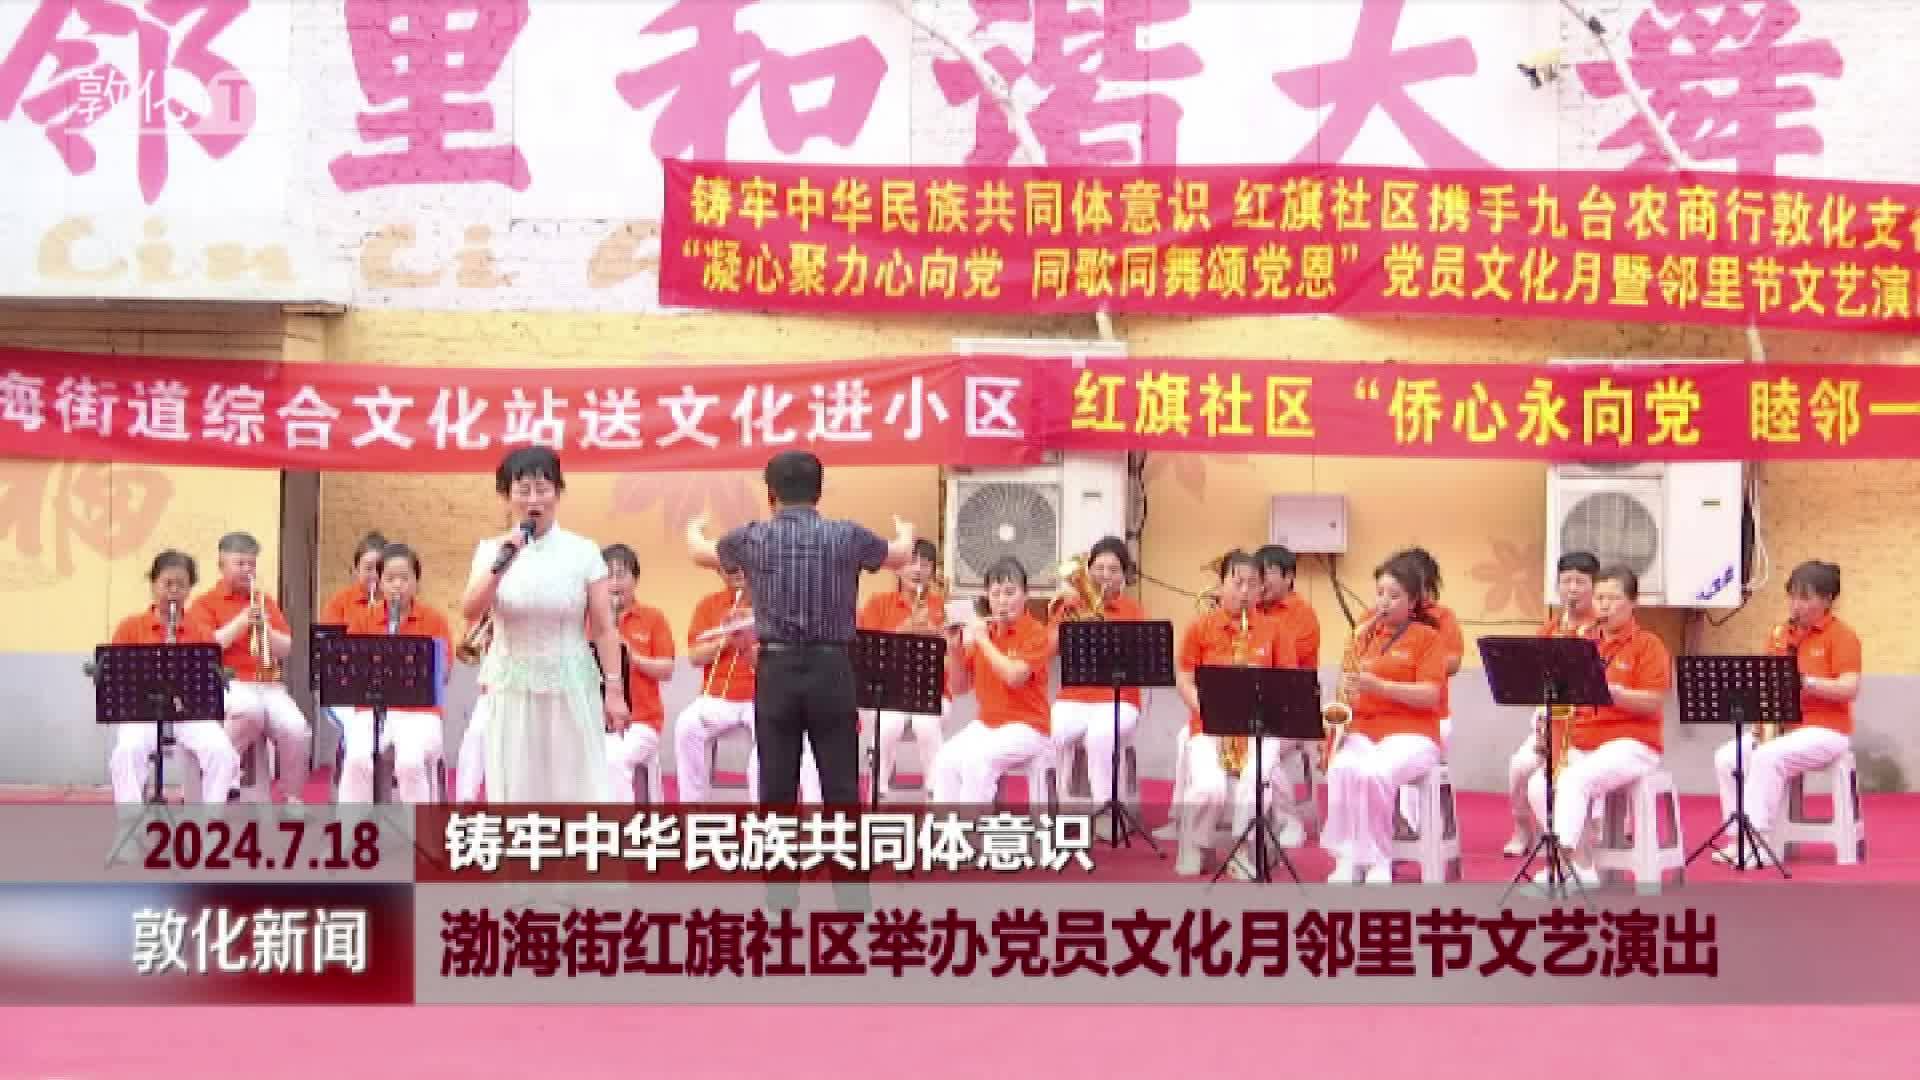 渤海街红旗社区举办党员文化月邻里节文艺演出